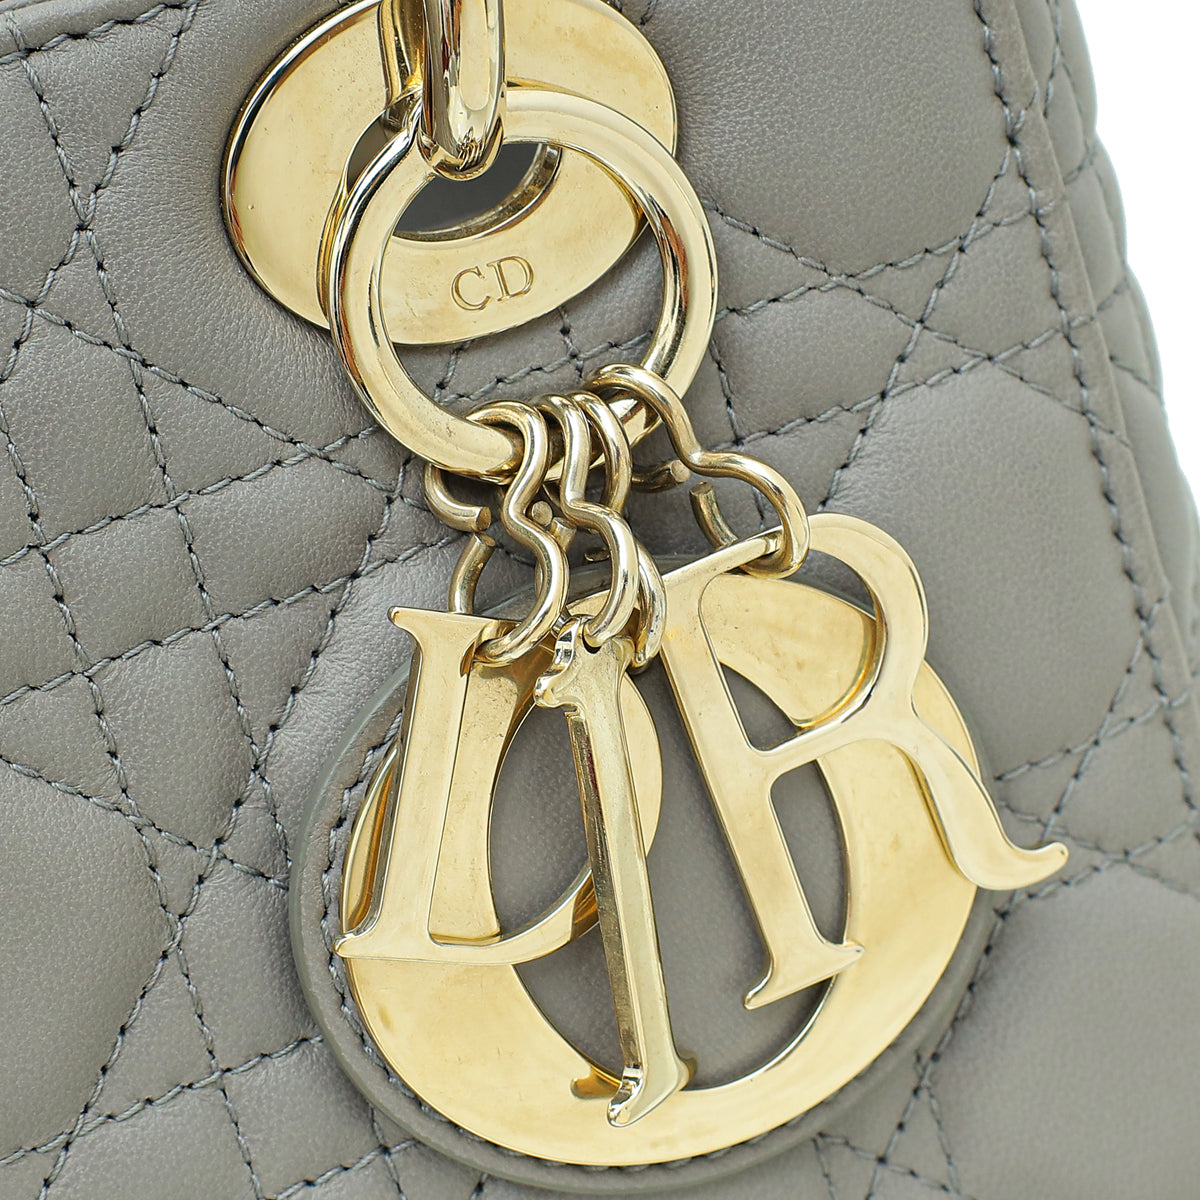 Christian Dior Grey Lady Dior My ABCDior Small Bag